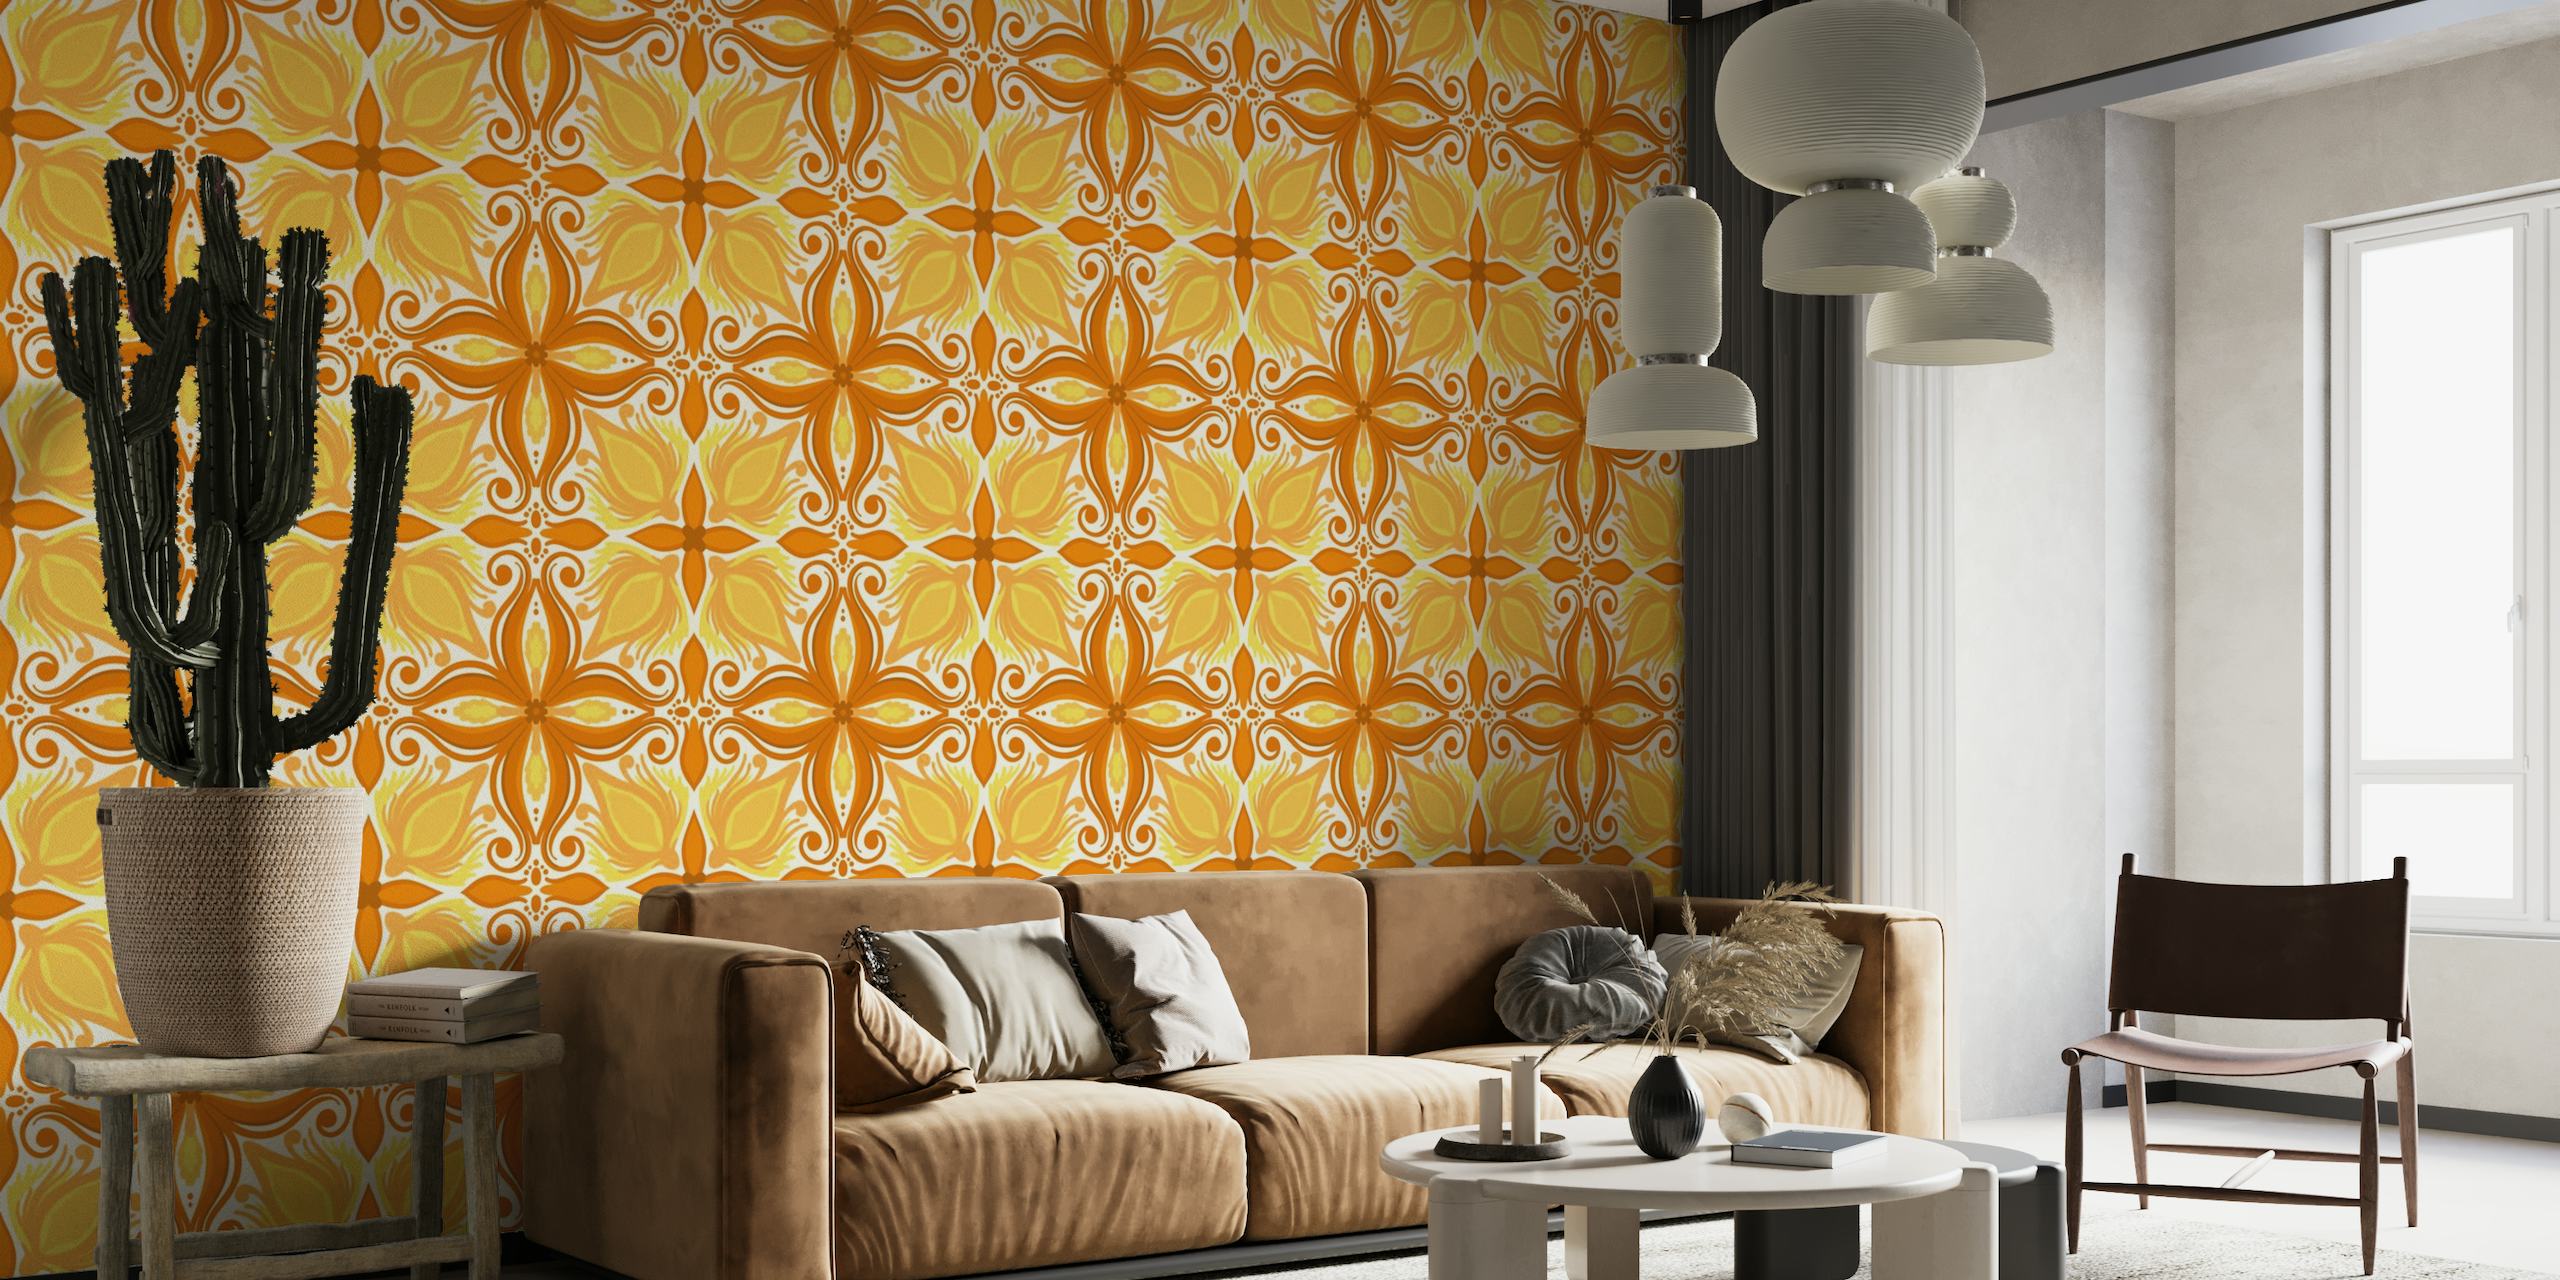 Ornate tiles, yellow and orange 8 papel pintado